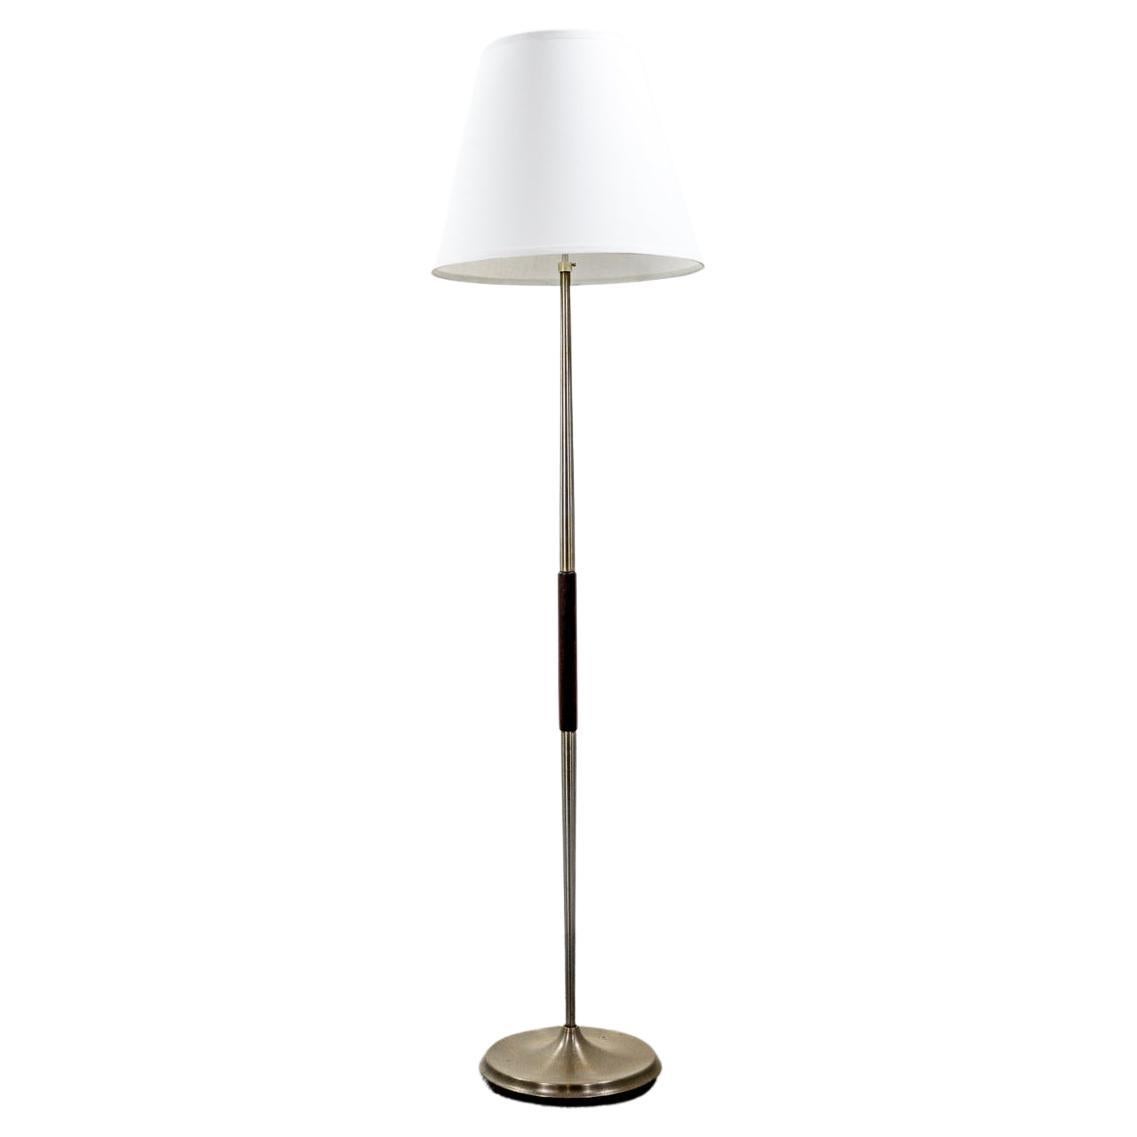 Dänische moderne Stehlampe aus Rosenholz und Metall, modern